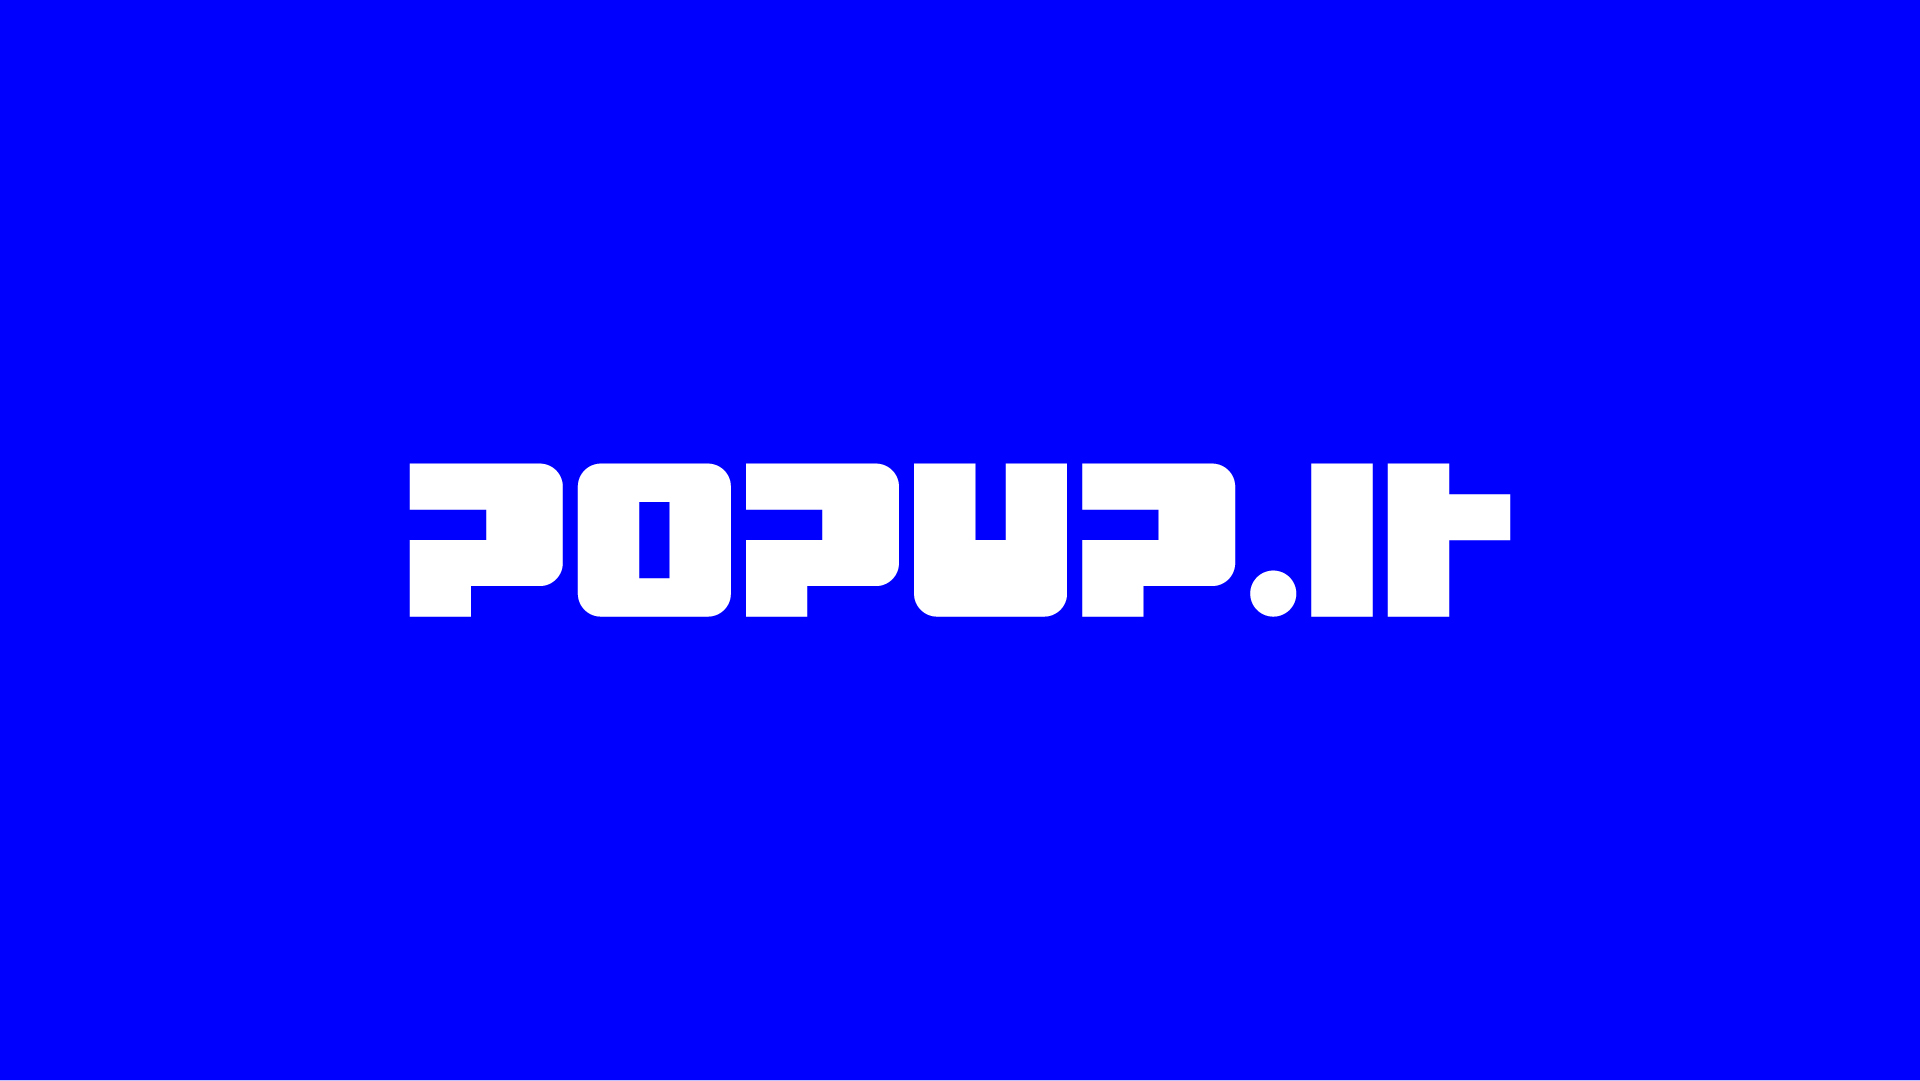 Popup_dear_problem_web_5_1080x1525